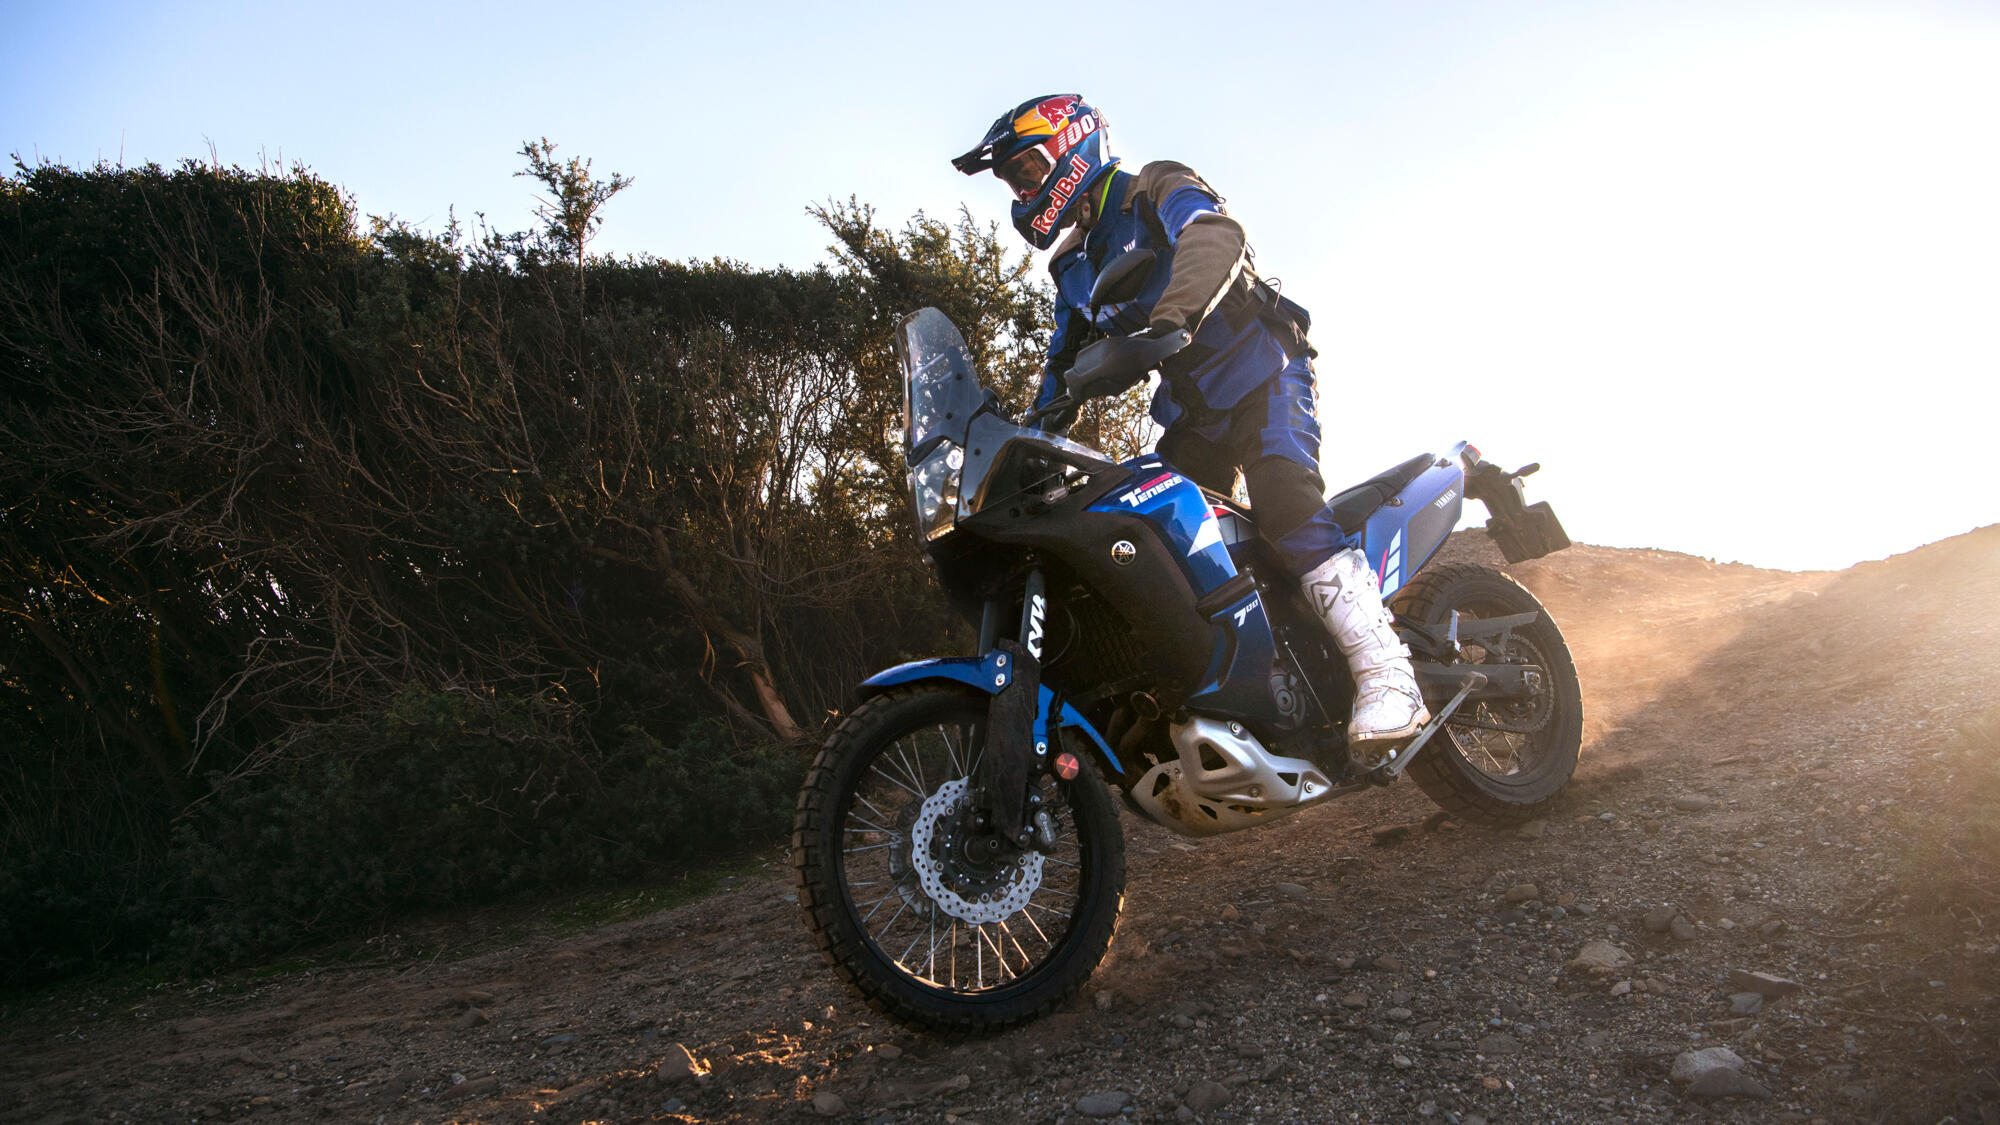 motorrijder rijdt op een blauwe adventure motor nar beneden op een onverhard pad met struiken ernaast